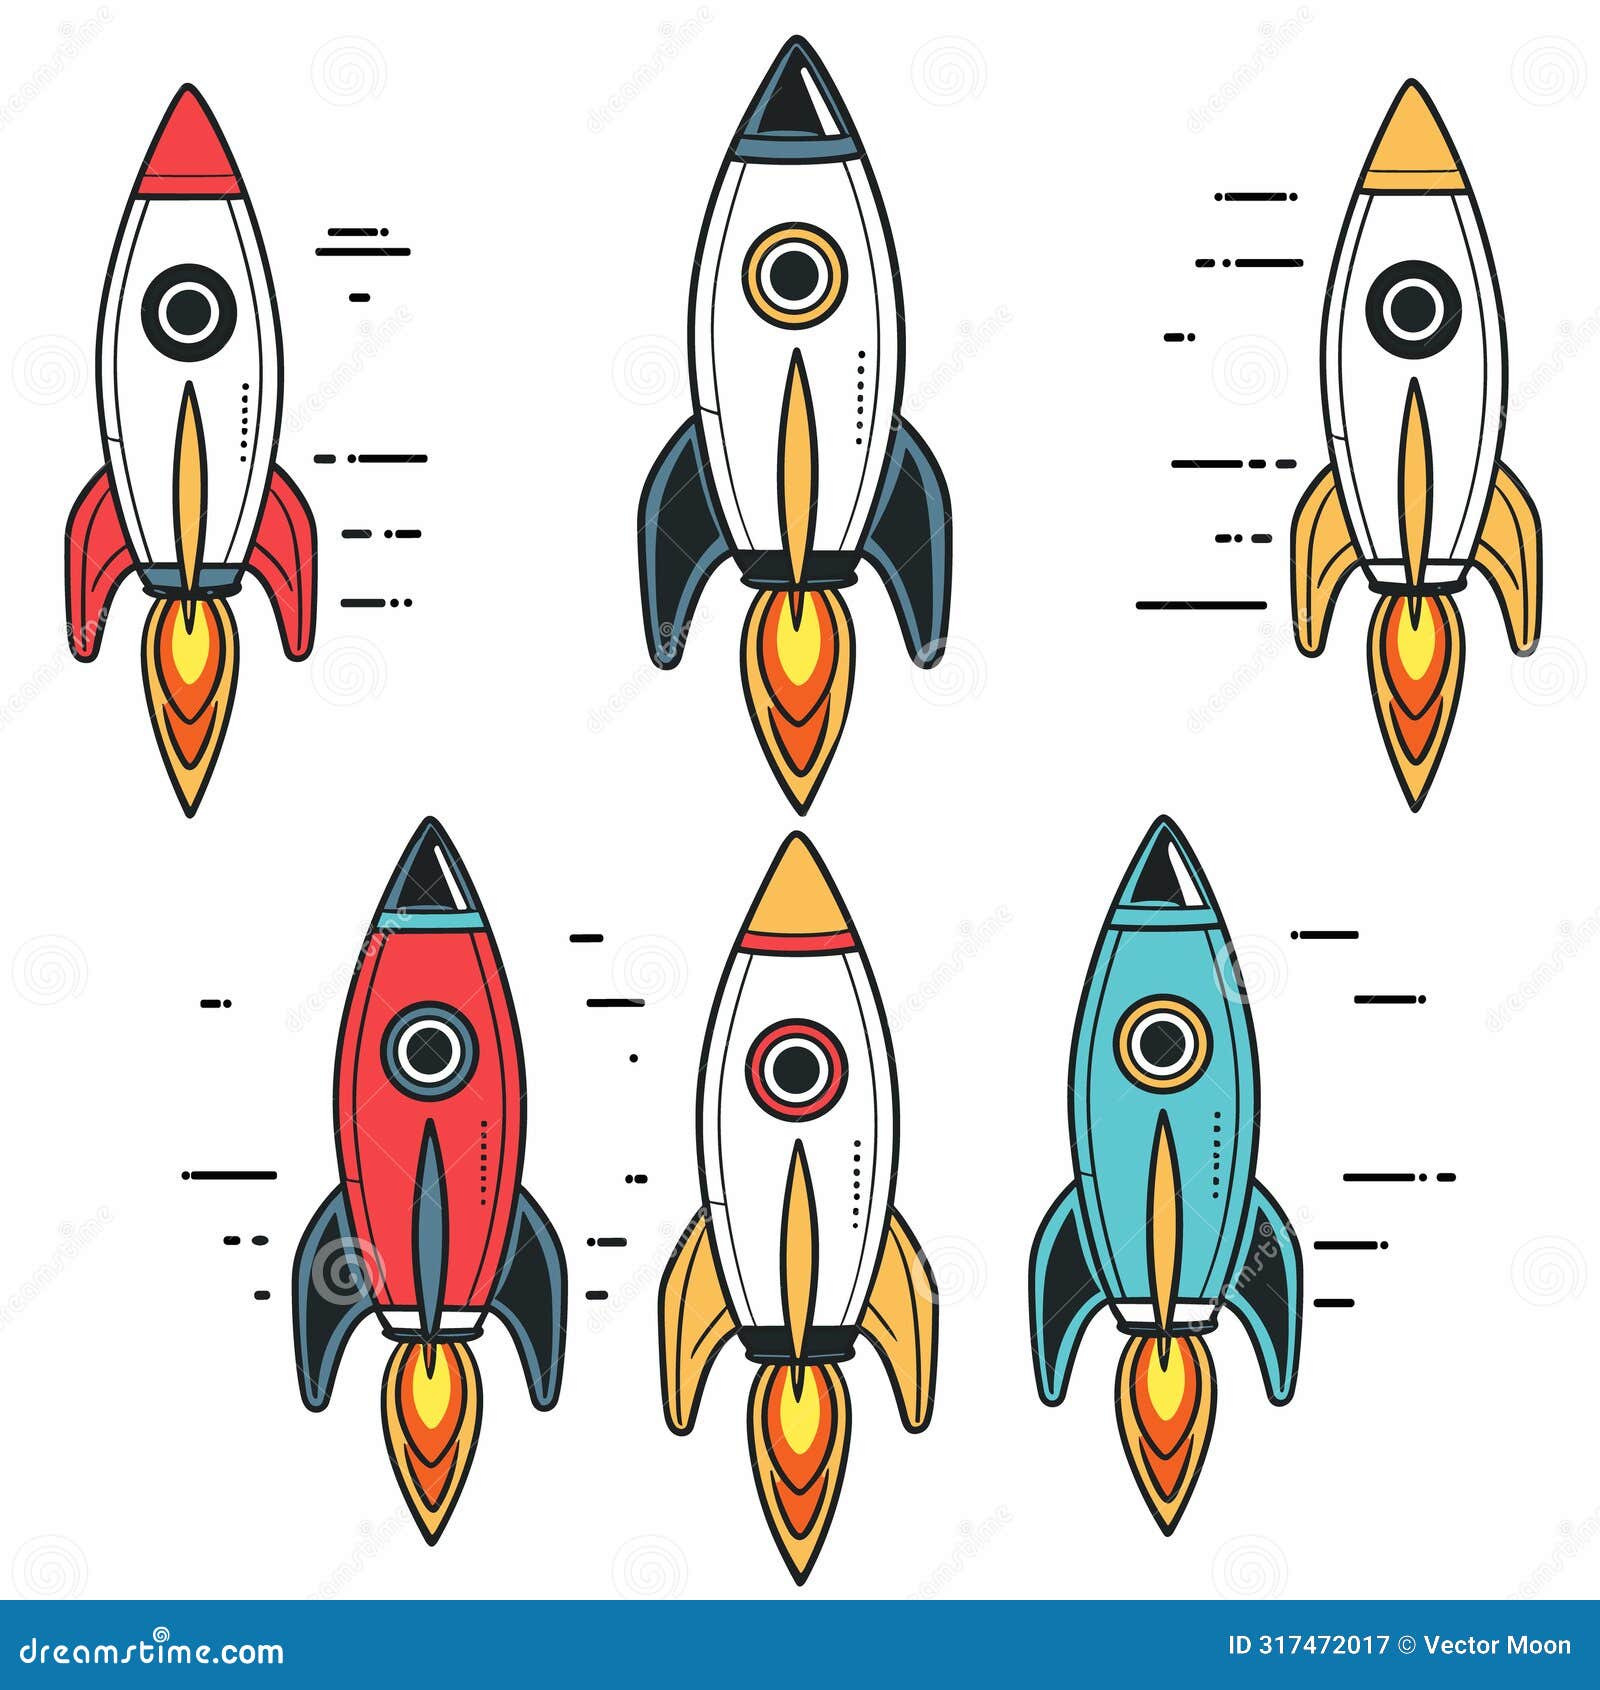 six colorful cartoon rockets ascending, different color schemes. simplistic , ideal